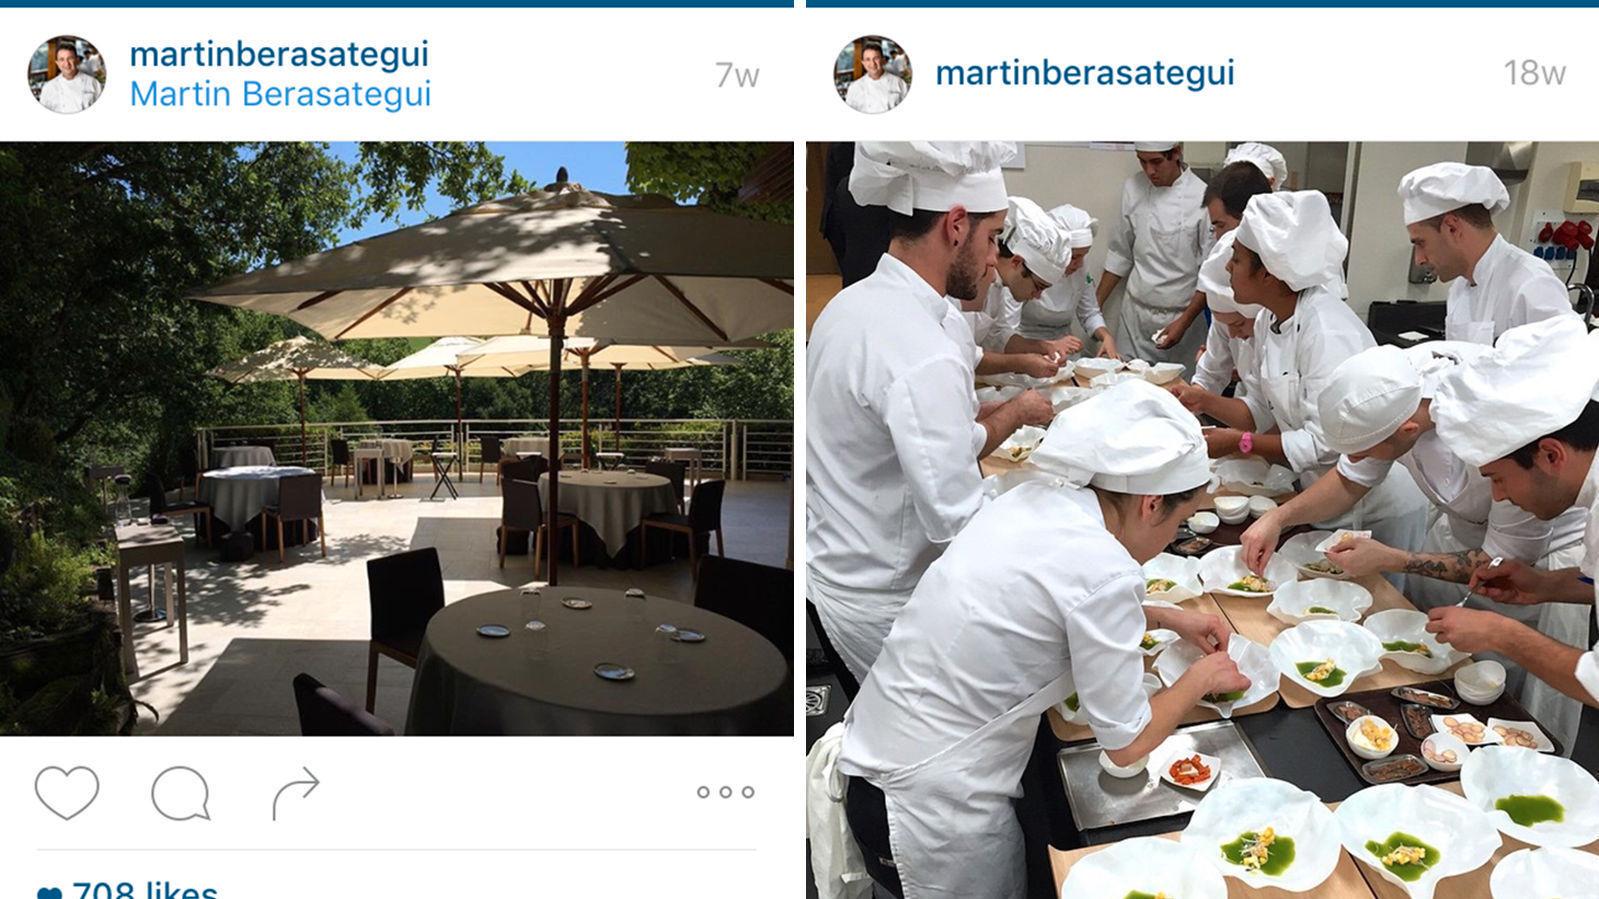 VERDENS BESTE: I følge TripAdvisors brukere er Martin Berasategui den beste restauranten i verden. Foto: Instagram/@martinberasategui.